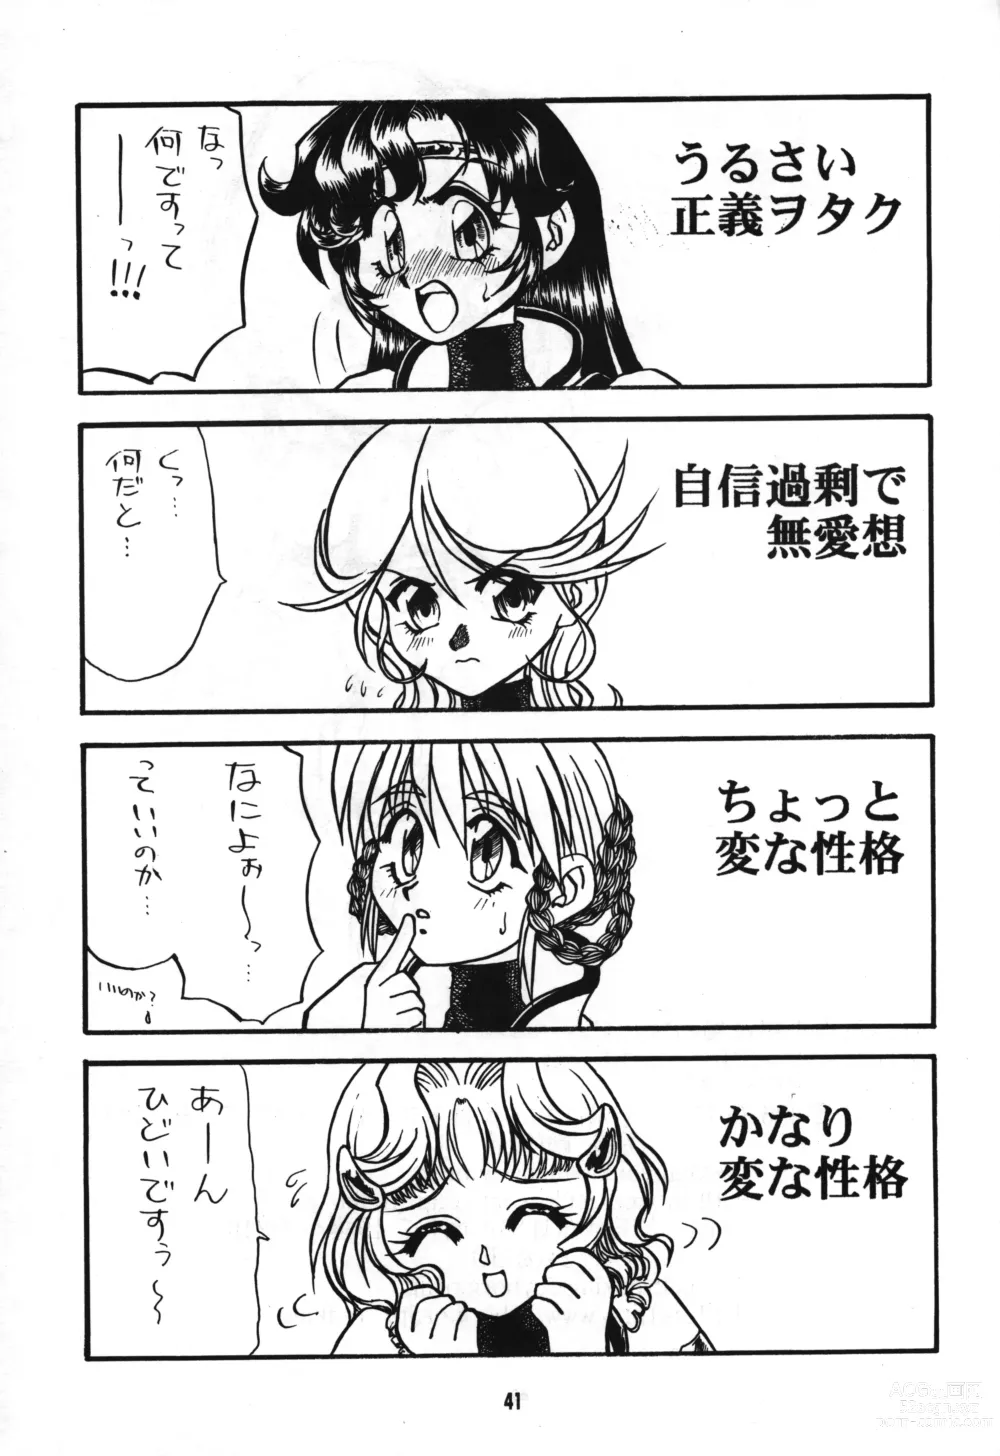 Page 40 of doujinshi Seigi wa Katsu no yo!!